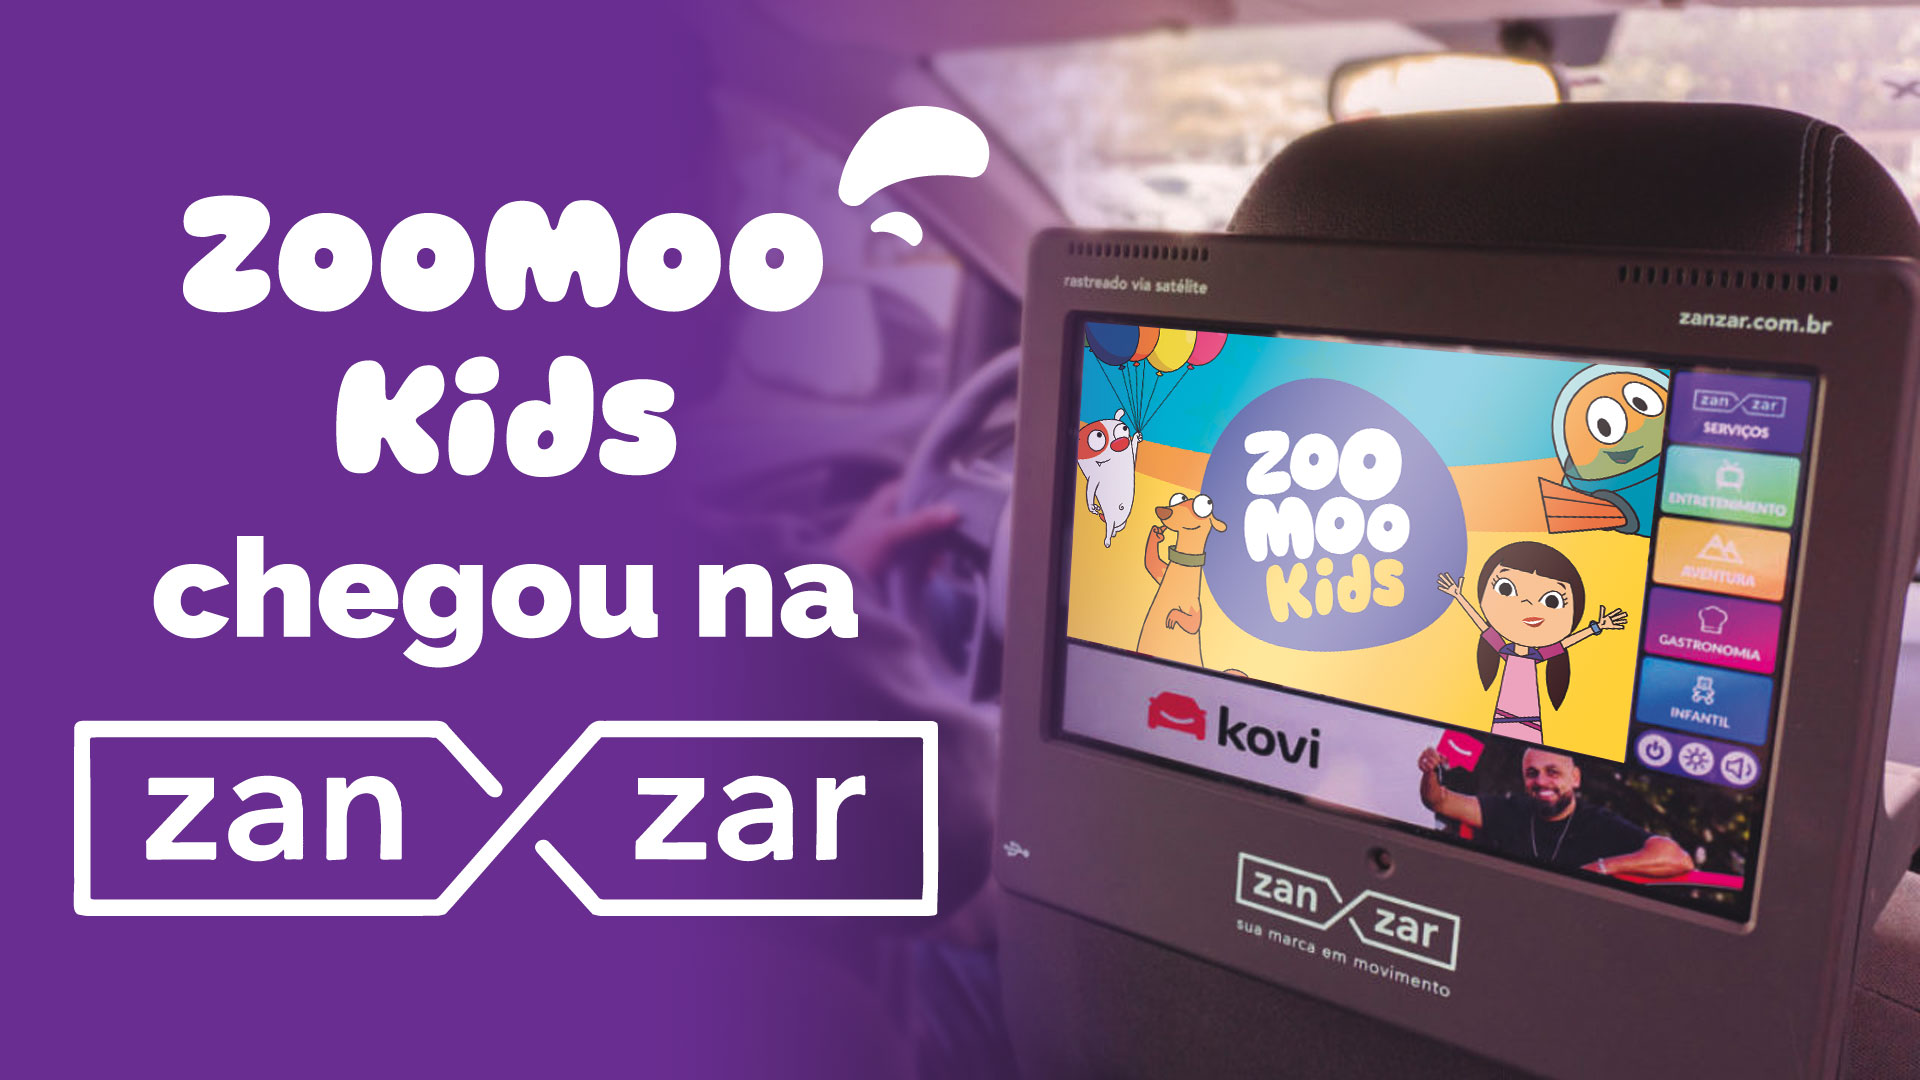 Canal ZooMoo Kids e Zanzar juntam forças para conquistar os usuários dos principais apps de mobilidade do Brasil